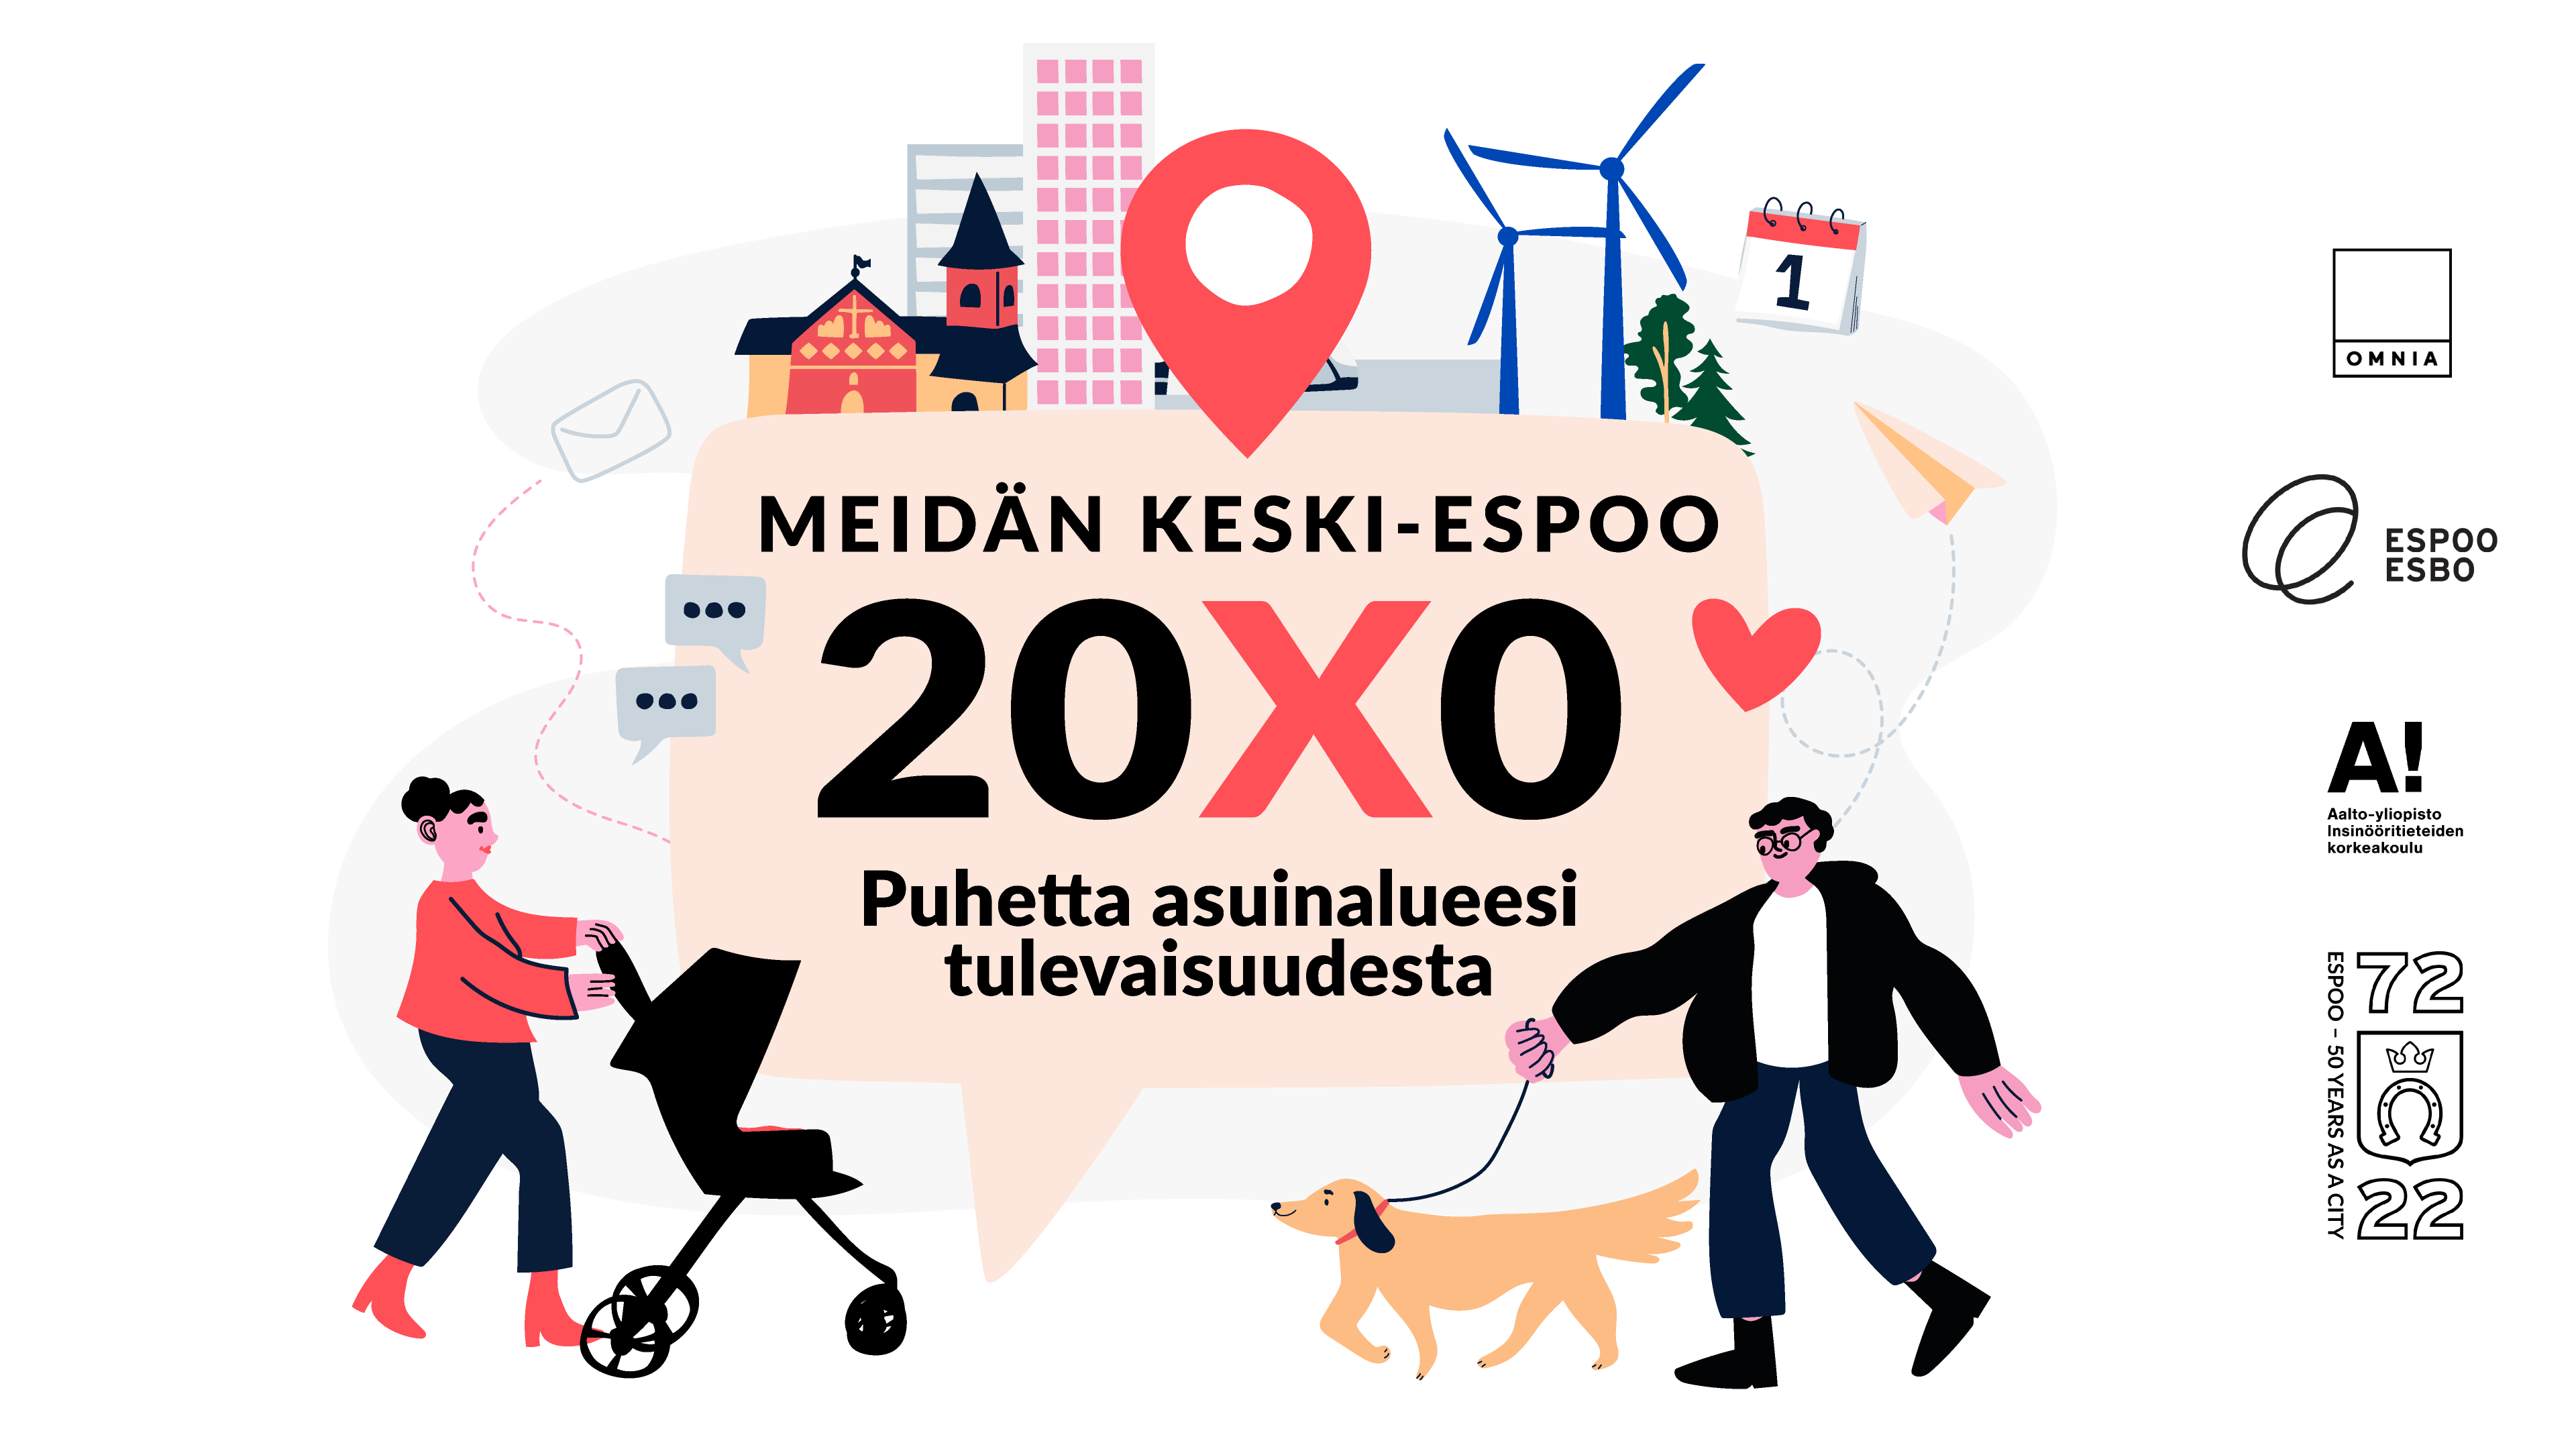 Kuvassa Ihmisiä Tulevaisuuden Espoossa. Kuvan keskellä myös teksti, jossa lukee "Meidän Keski-Espoo 20X0, puhetta asuinalueesi tulevaisuudesta".